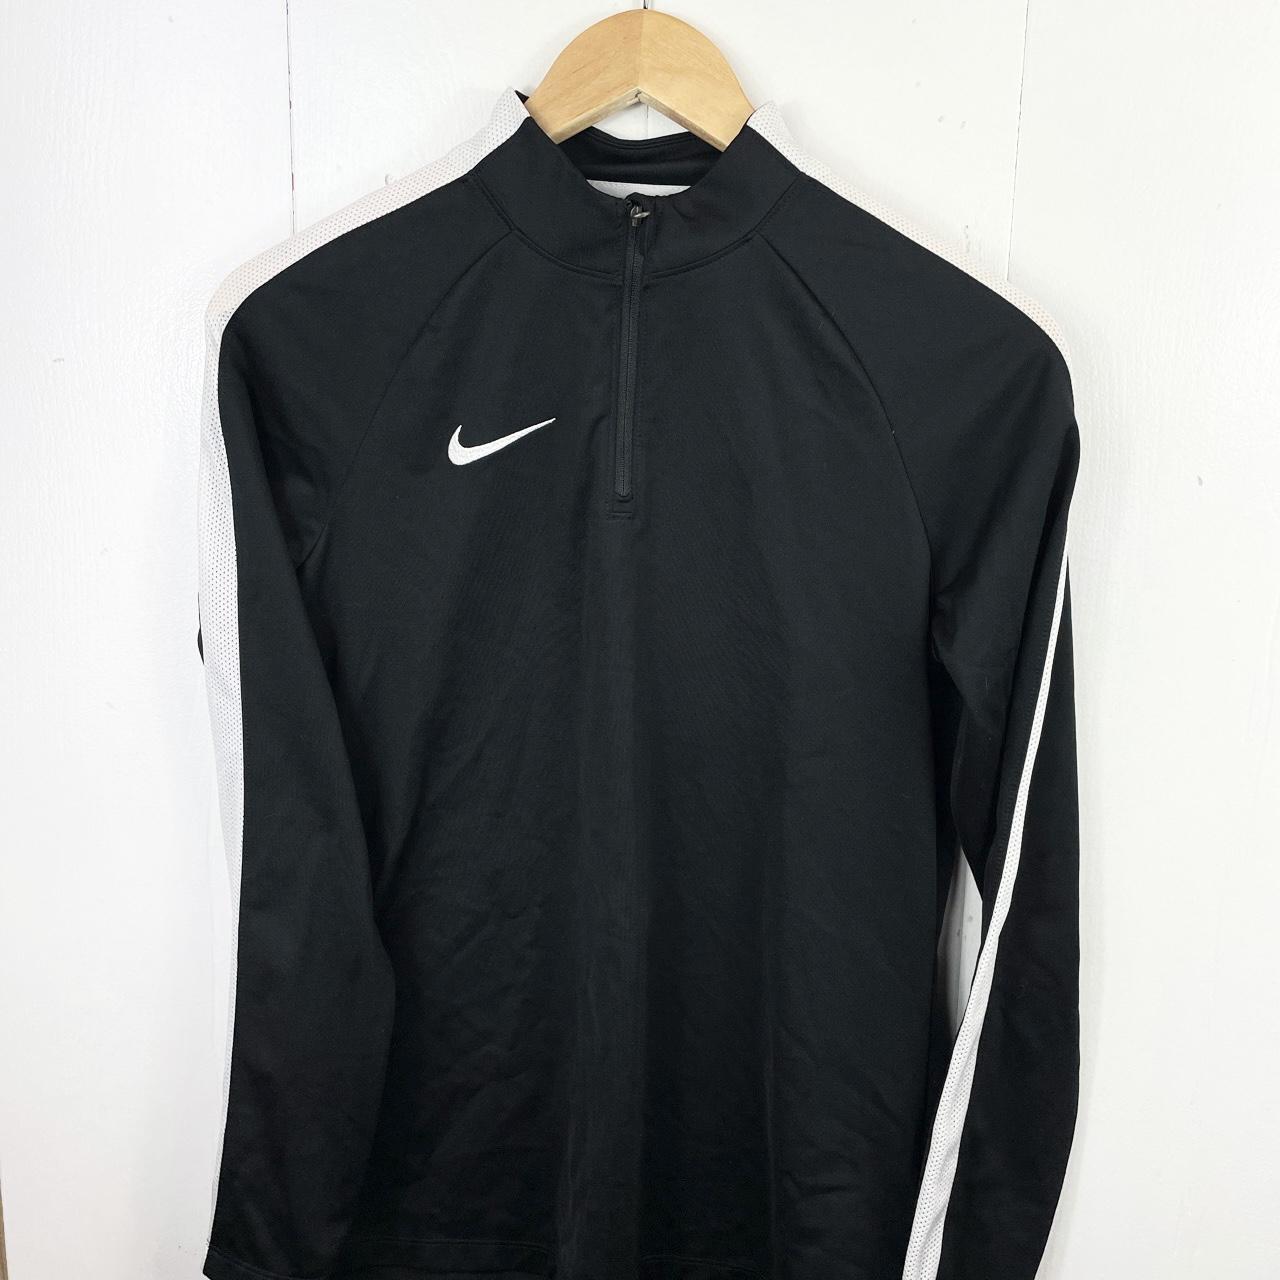 Nike Dri fit quarter zip jumper in black, with white... - Depop